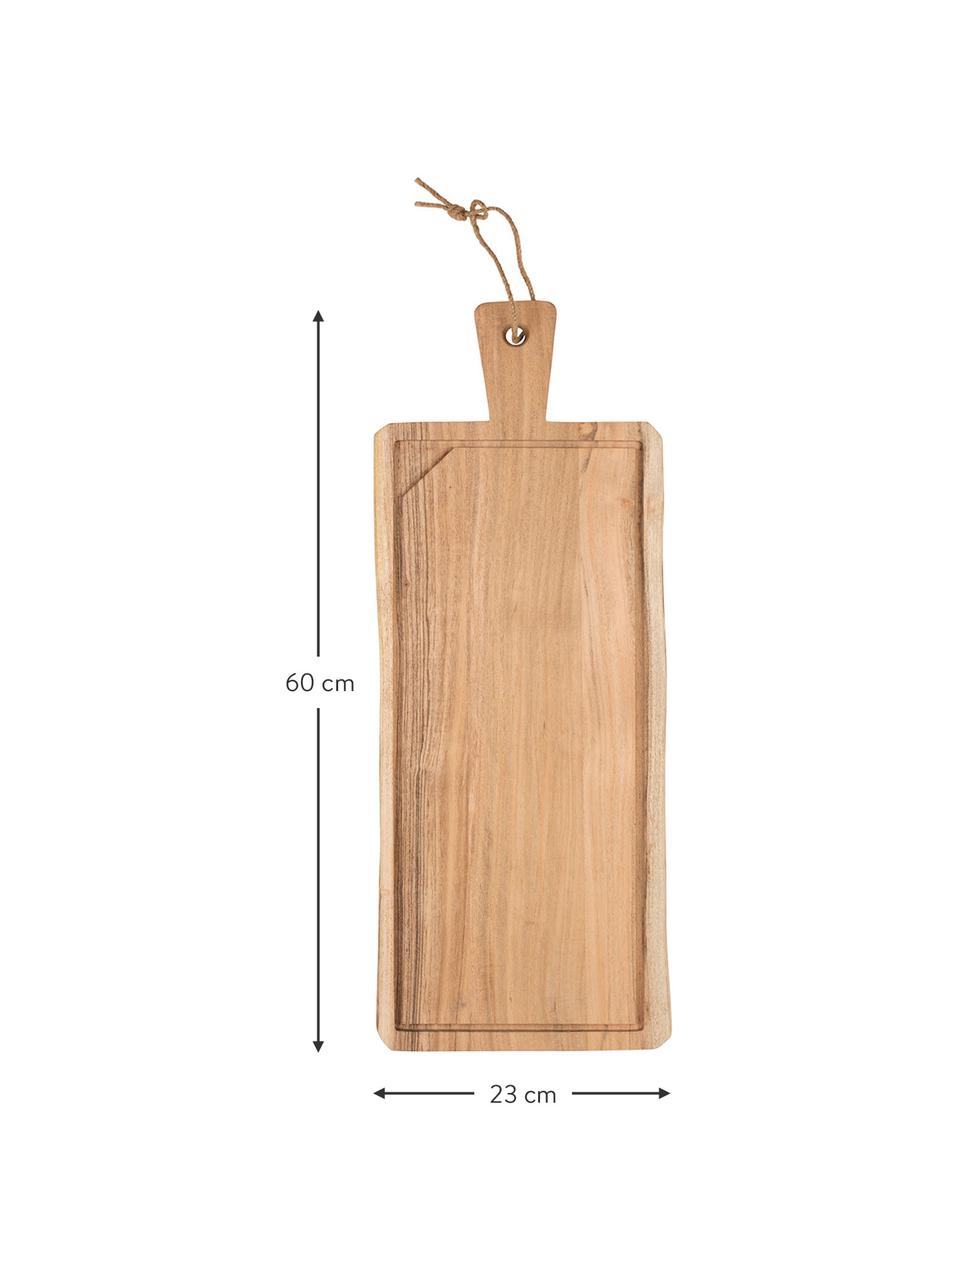 Prkénko XL z akátového dřeva Albert, D 60 cm x Š 23 cm, Akátové dřevo, Akátové dřevo, D 60 cm, Š 23 cm